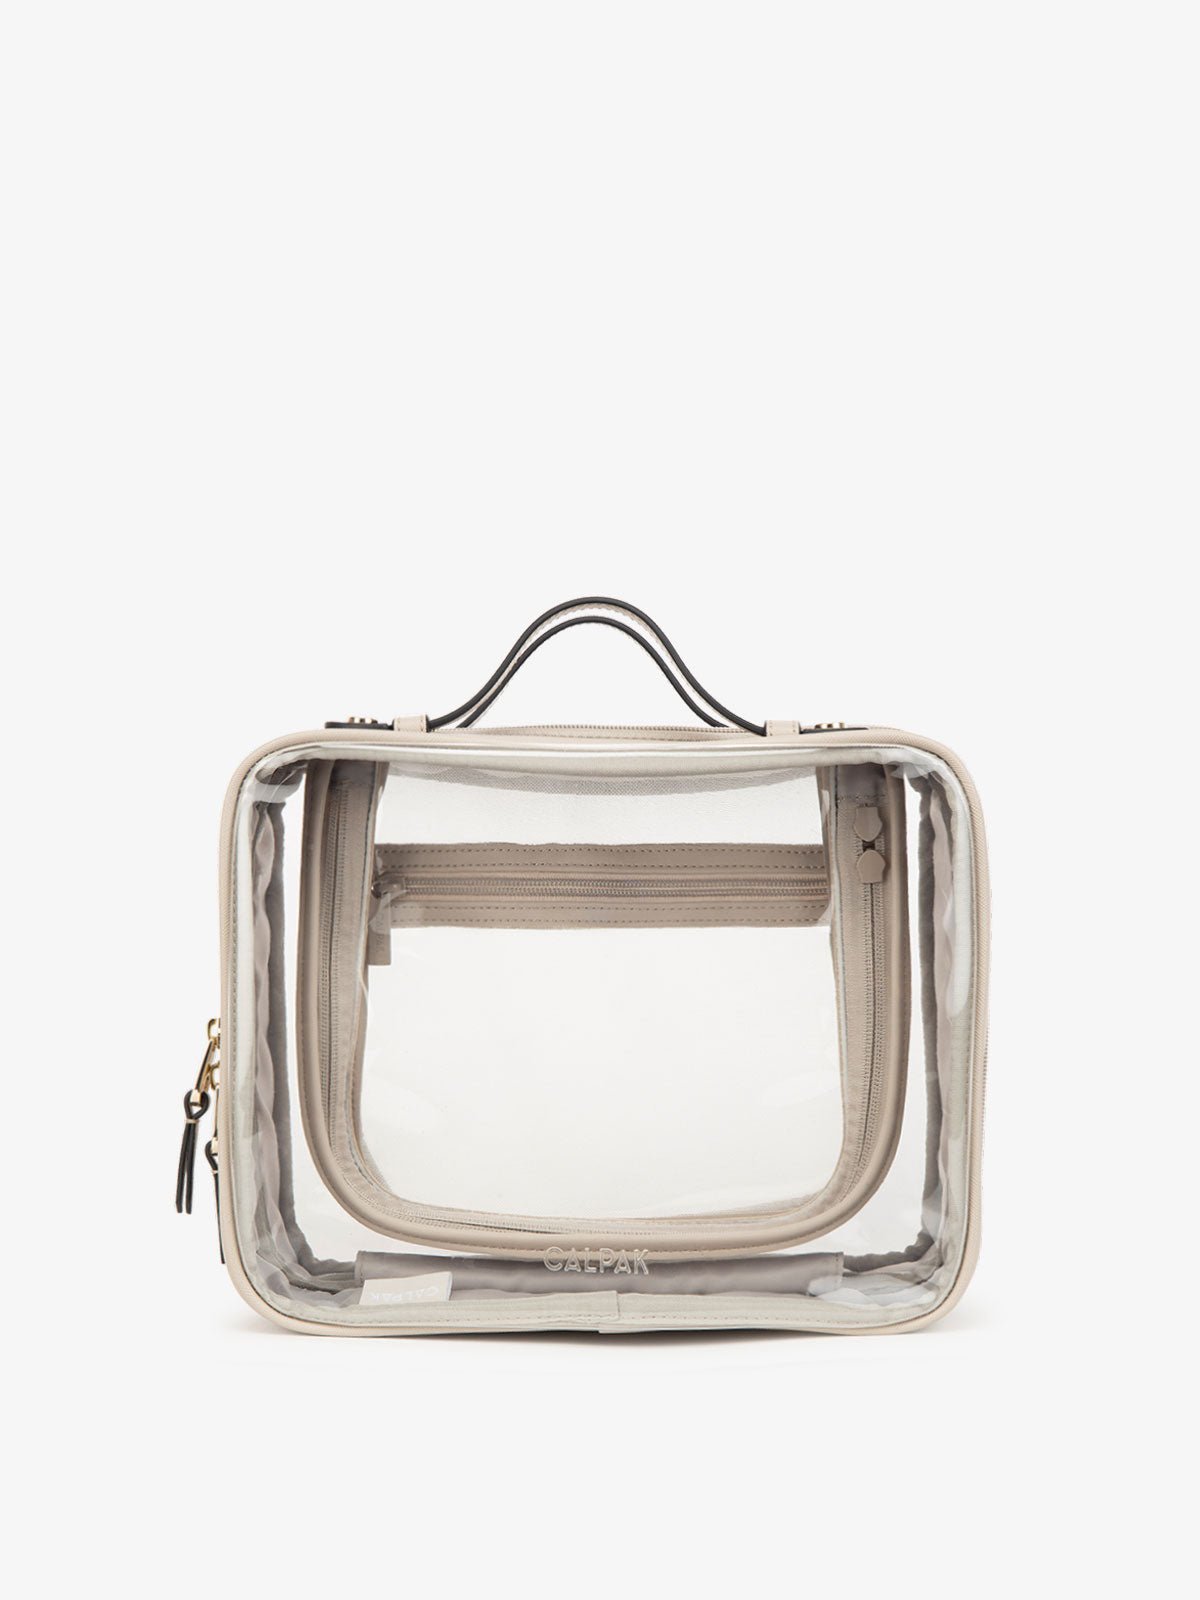 CALPAK white transparent makeup bag